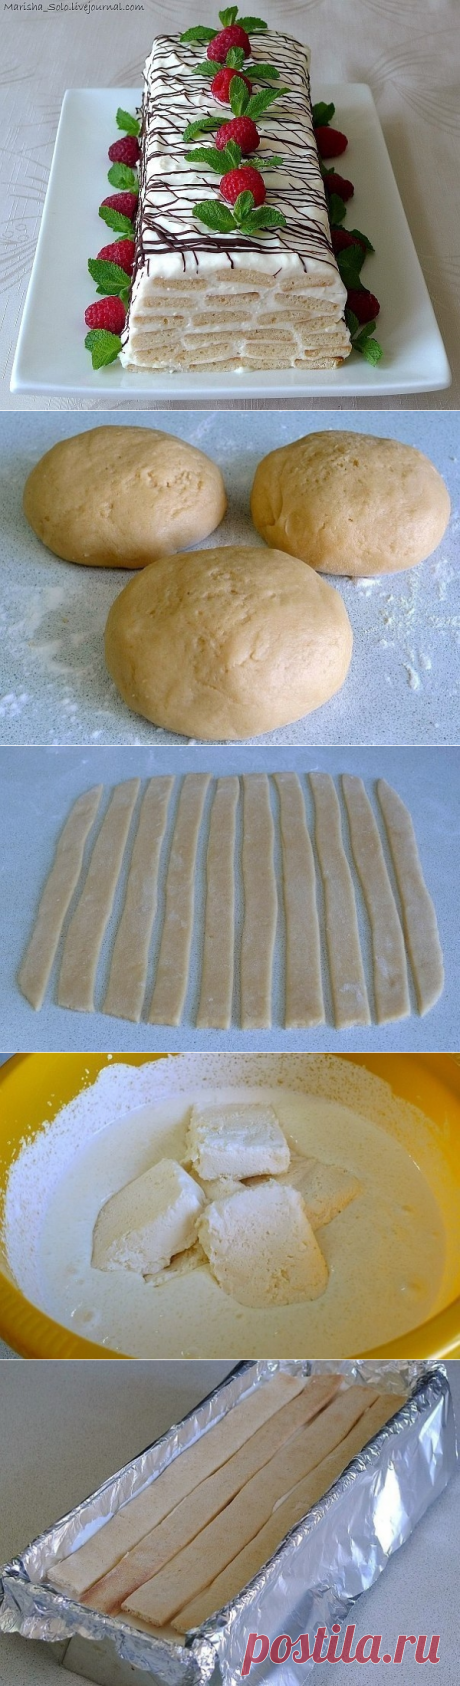 Как приготовить торт медовое полено  - рецепт, ингридиенты и фотографии